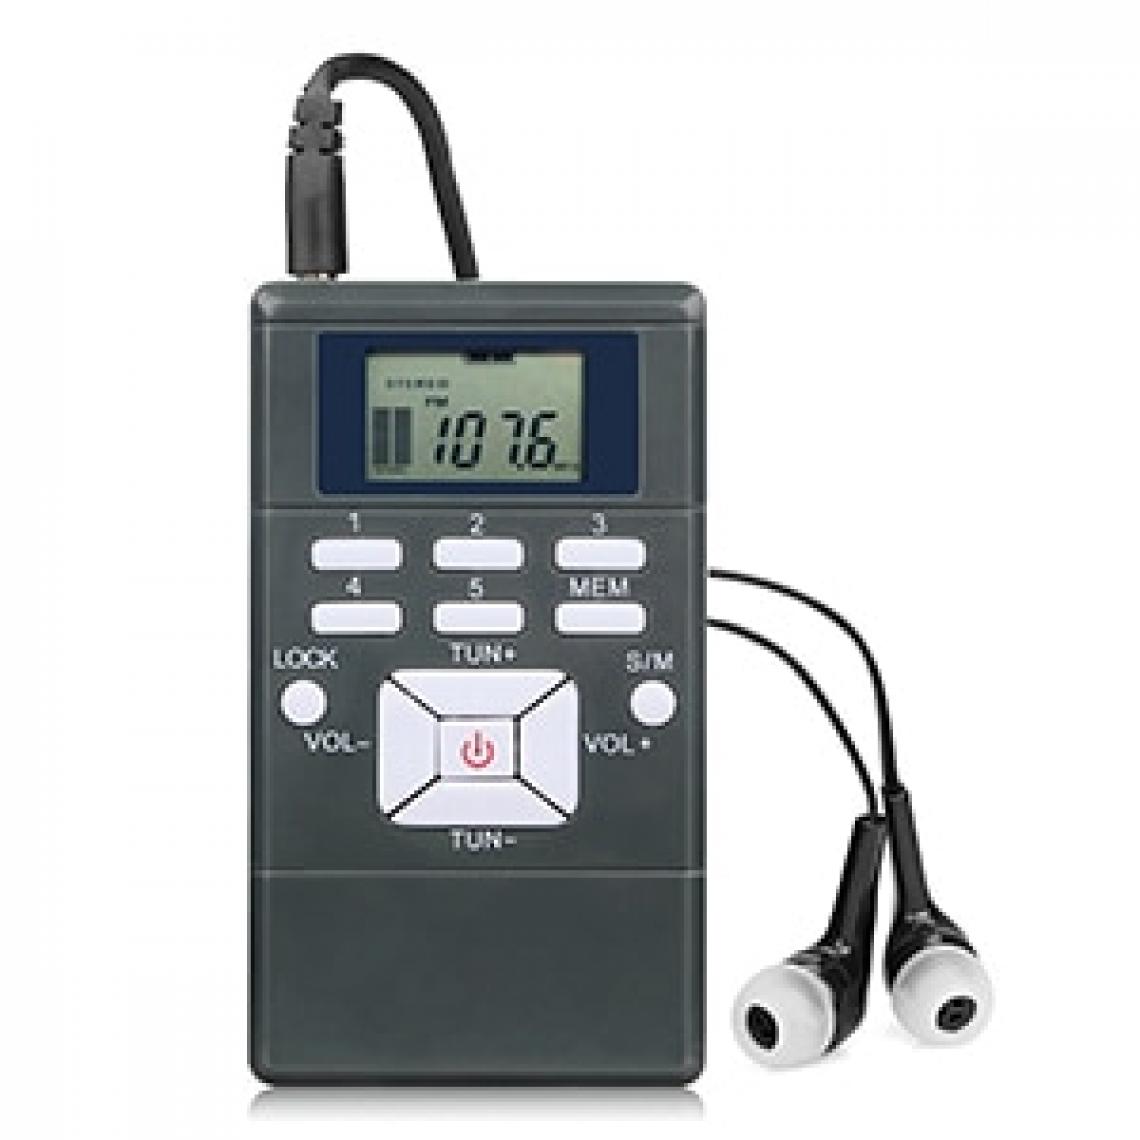 Universal - Récepteur radio FM radio stéréo portable DSP mini-récepteur d'horloge numérique pour l'église, la conférence, le musée, le guide de visite | radio DSP | radio stéréo FM radio stéréo - Radio